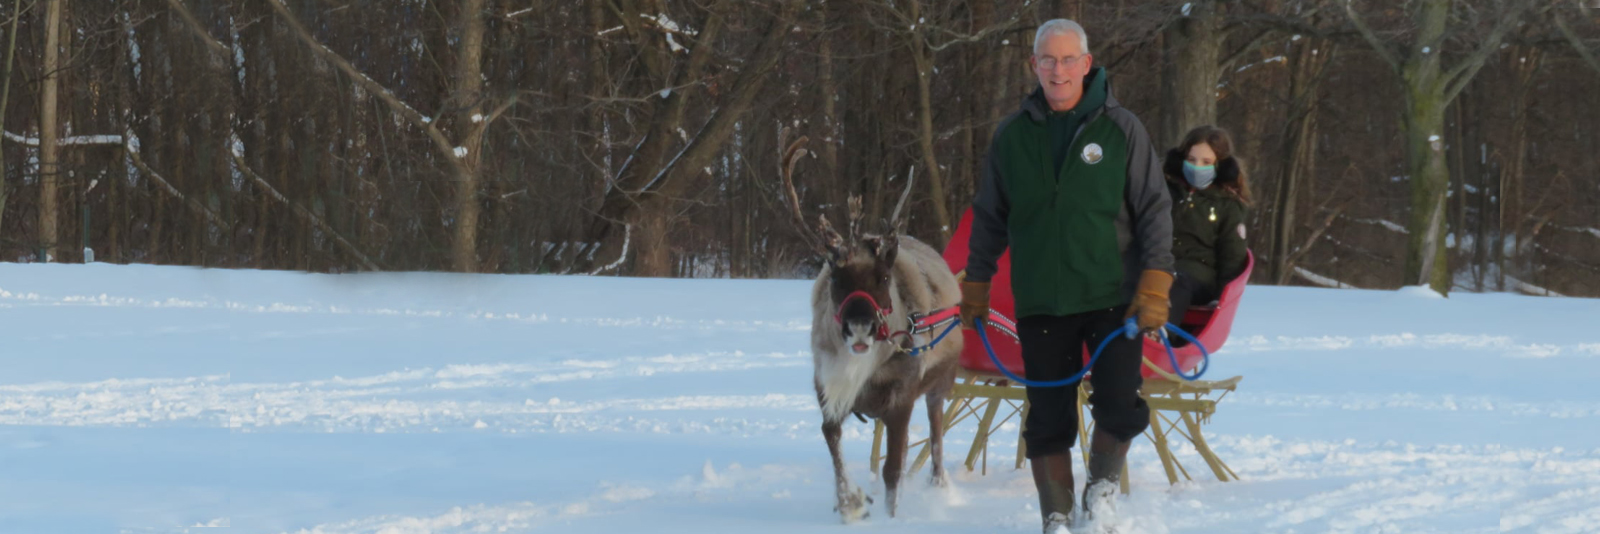 Reindeer pulling a sleigh